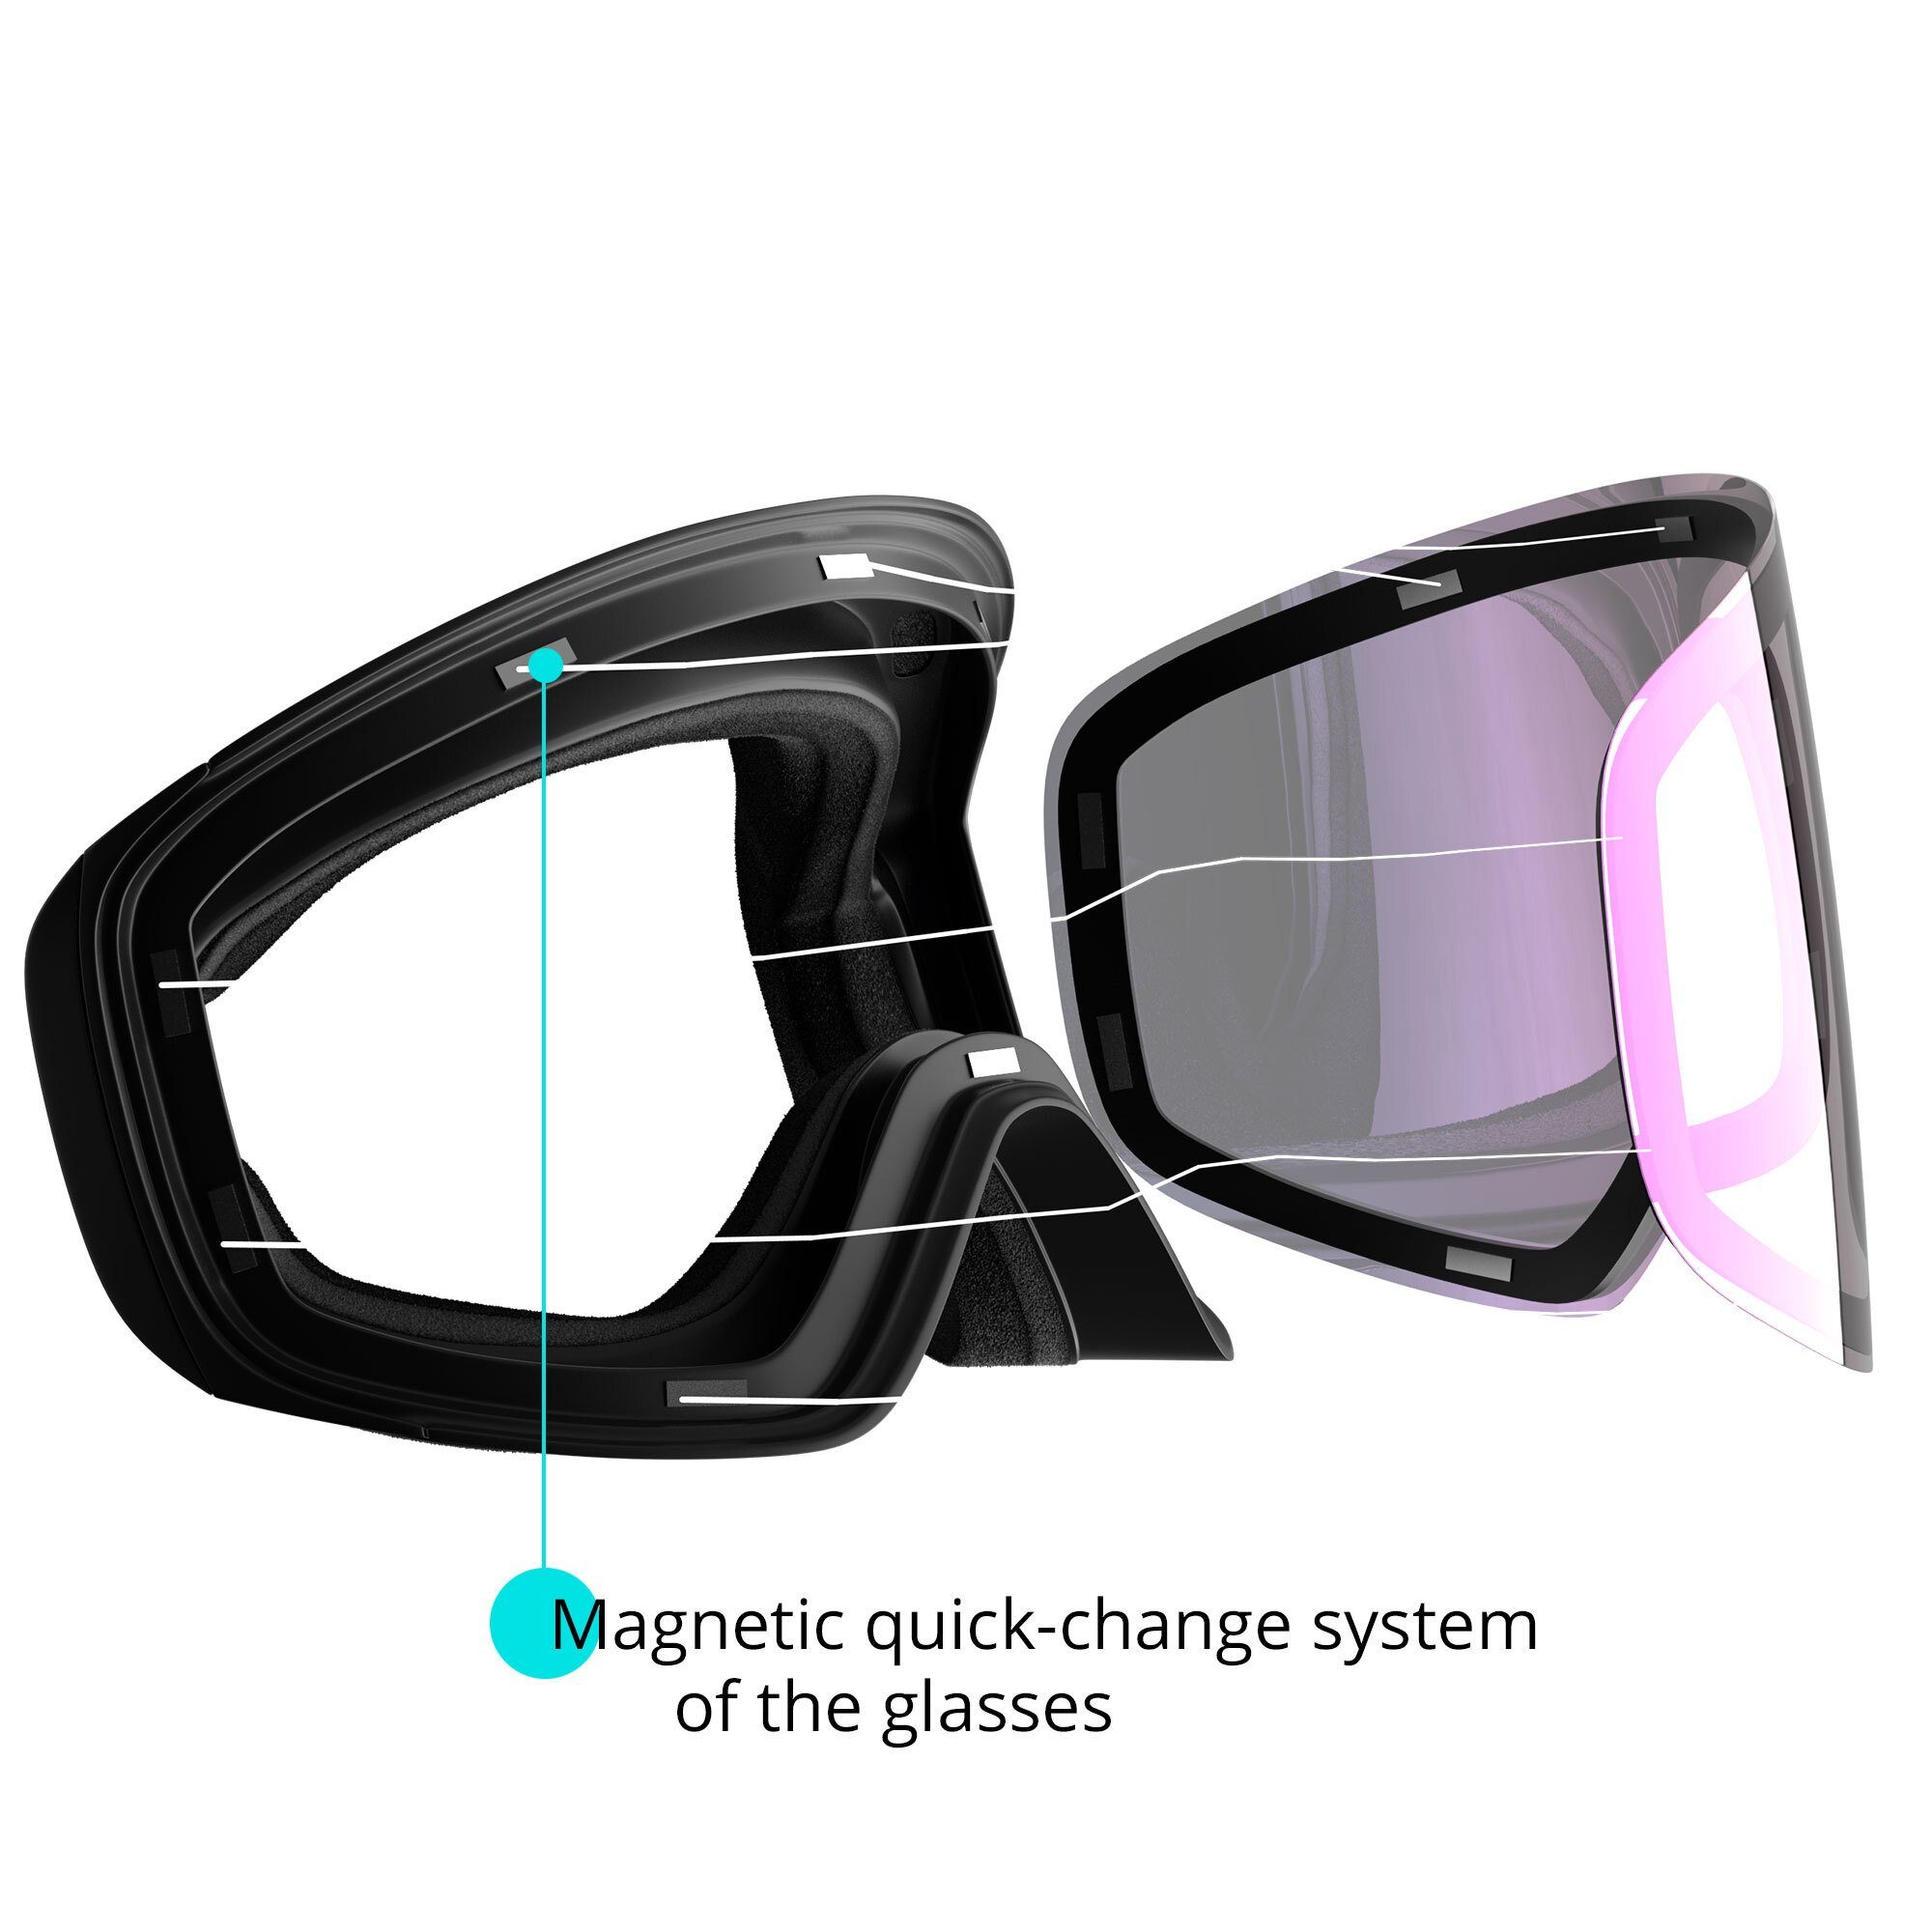 YEAZ Skibrille TWEAK-X Magnet-Wechsel-System ski- snowboard-brille, Gläser und für (3-St)